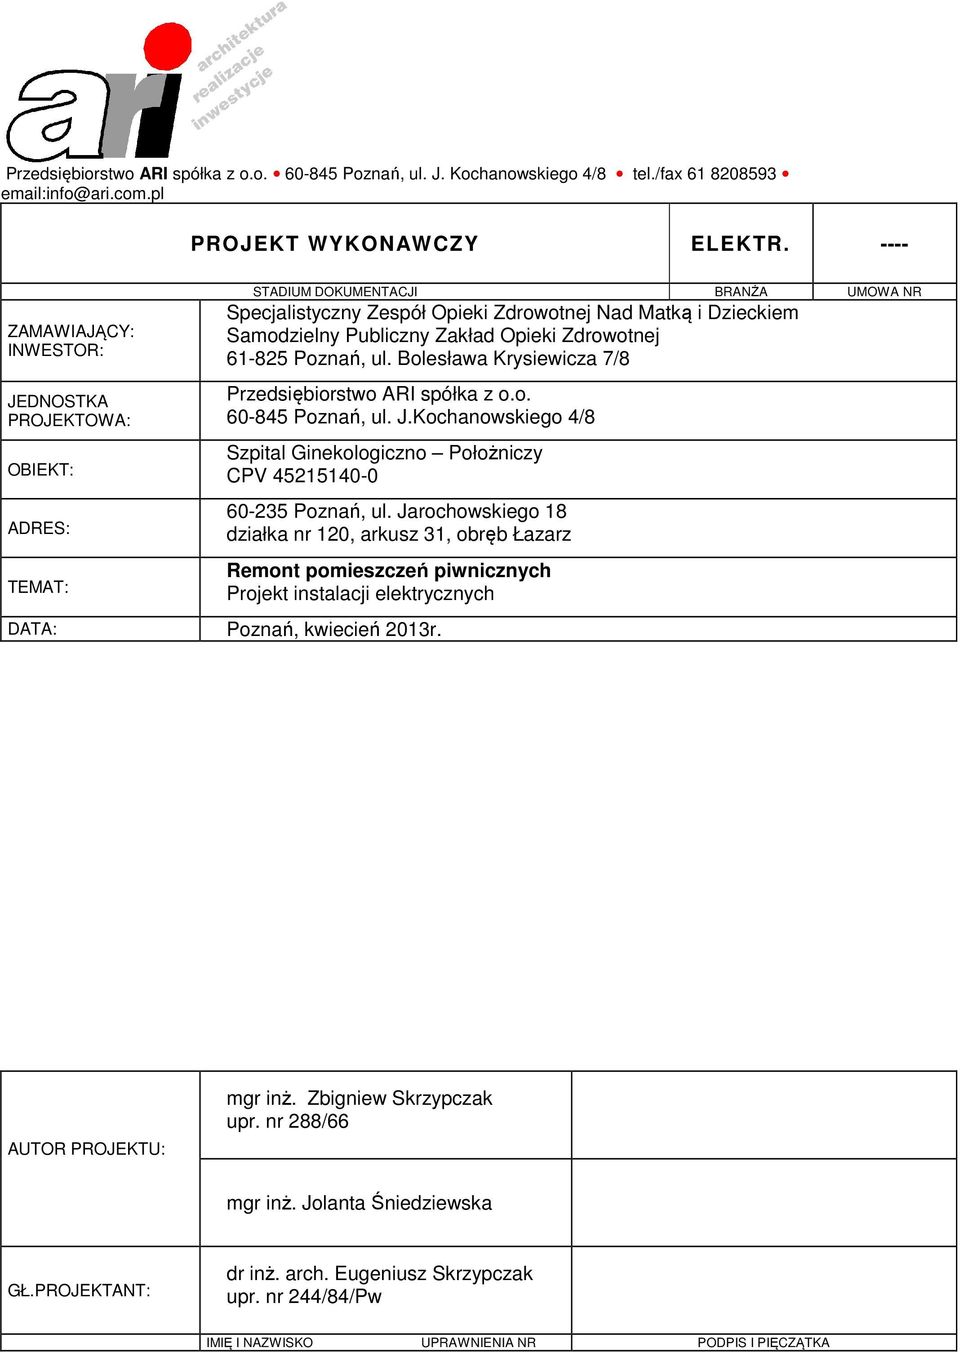 Zakład Opieki Zdrowotnej 61-825 Poznań, ul. Bolesława Krysiewicza 7/8 Przedsiębiorstwo ARI spółka z o.o. 60-845 Poznań, ul. J.